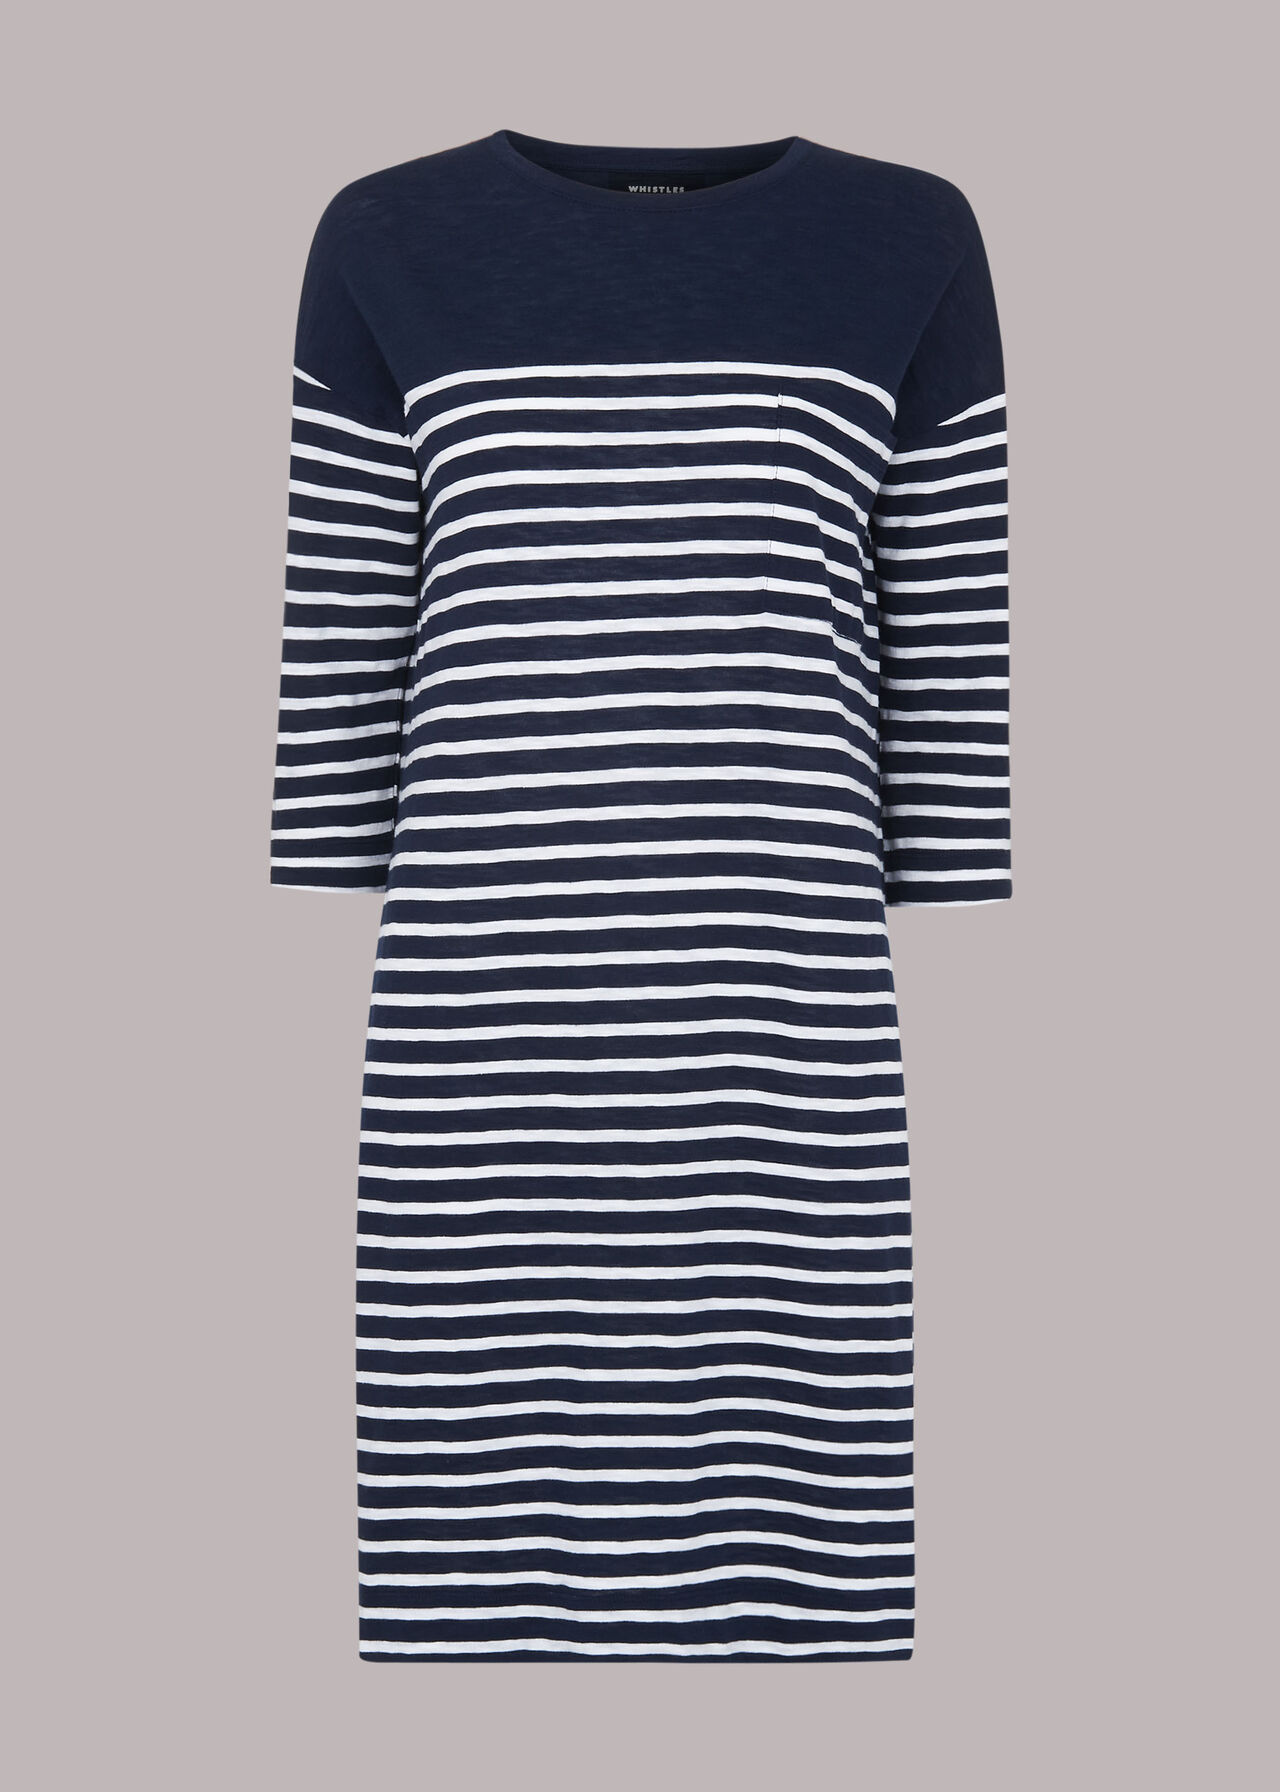 Breton Stripe Pocket Dress